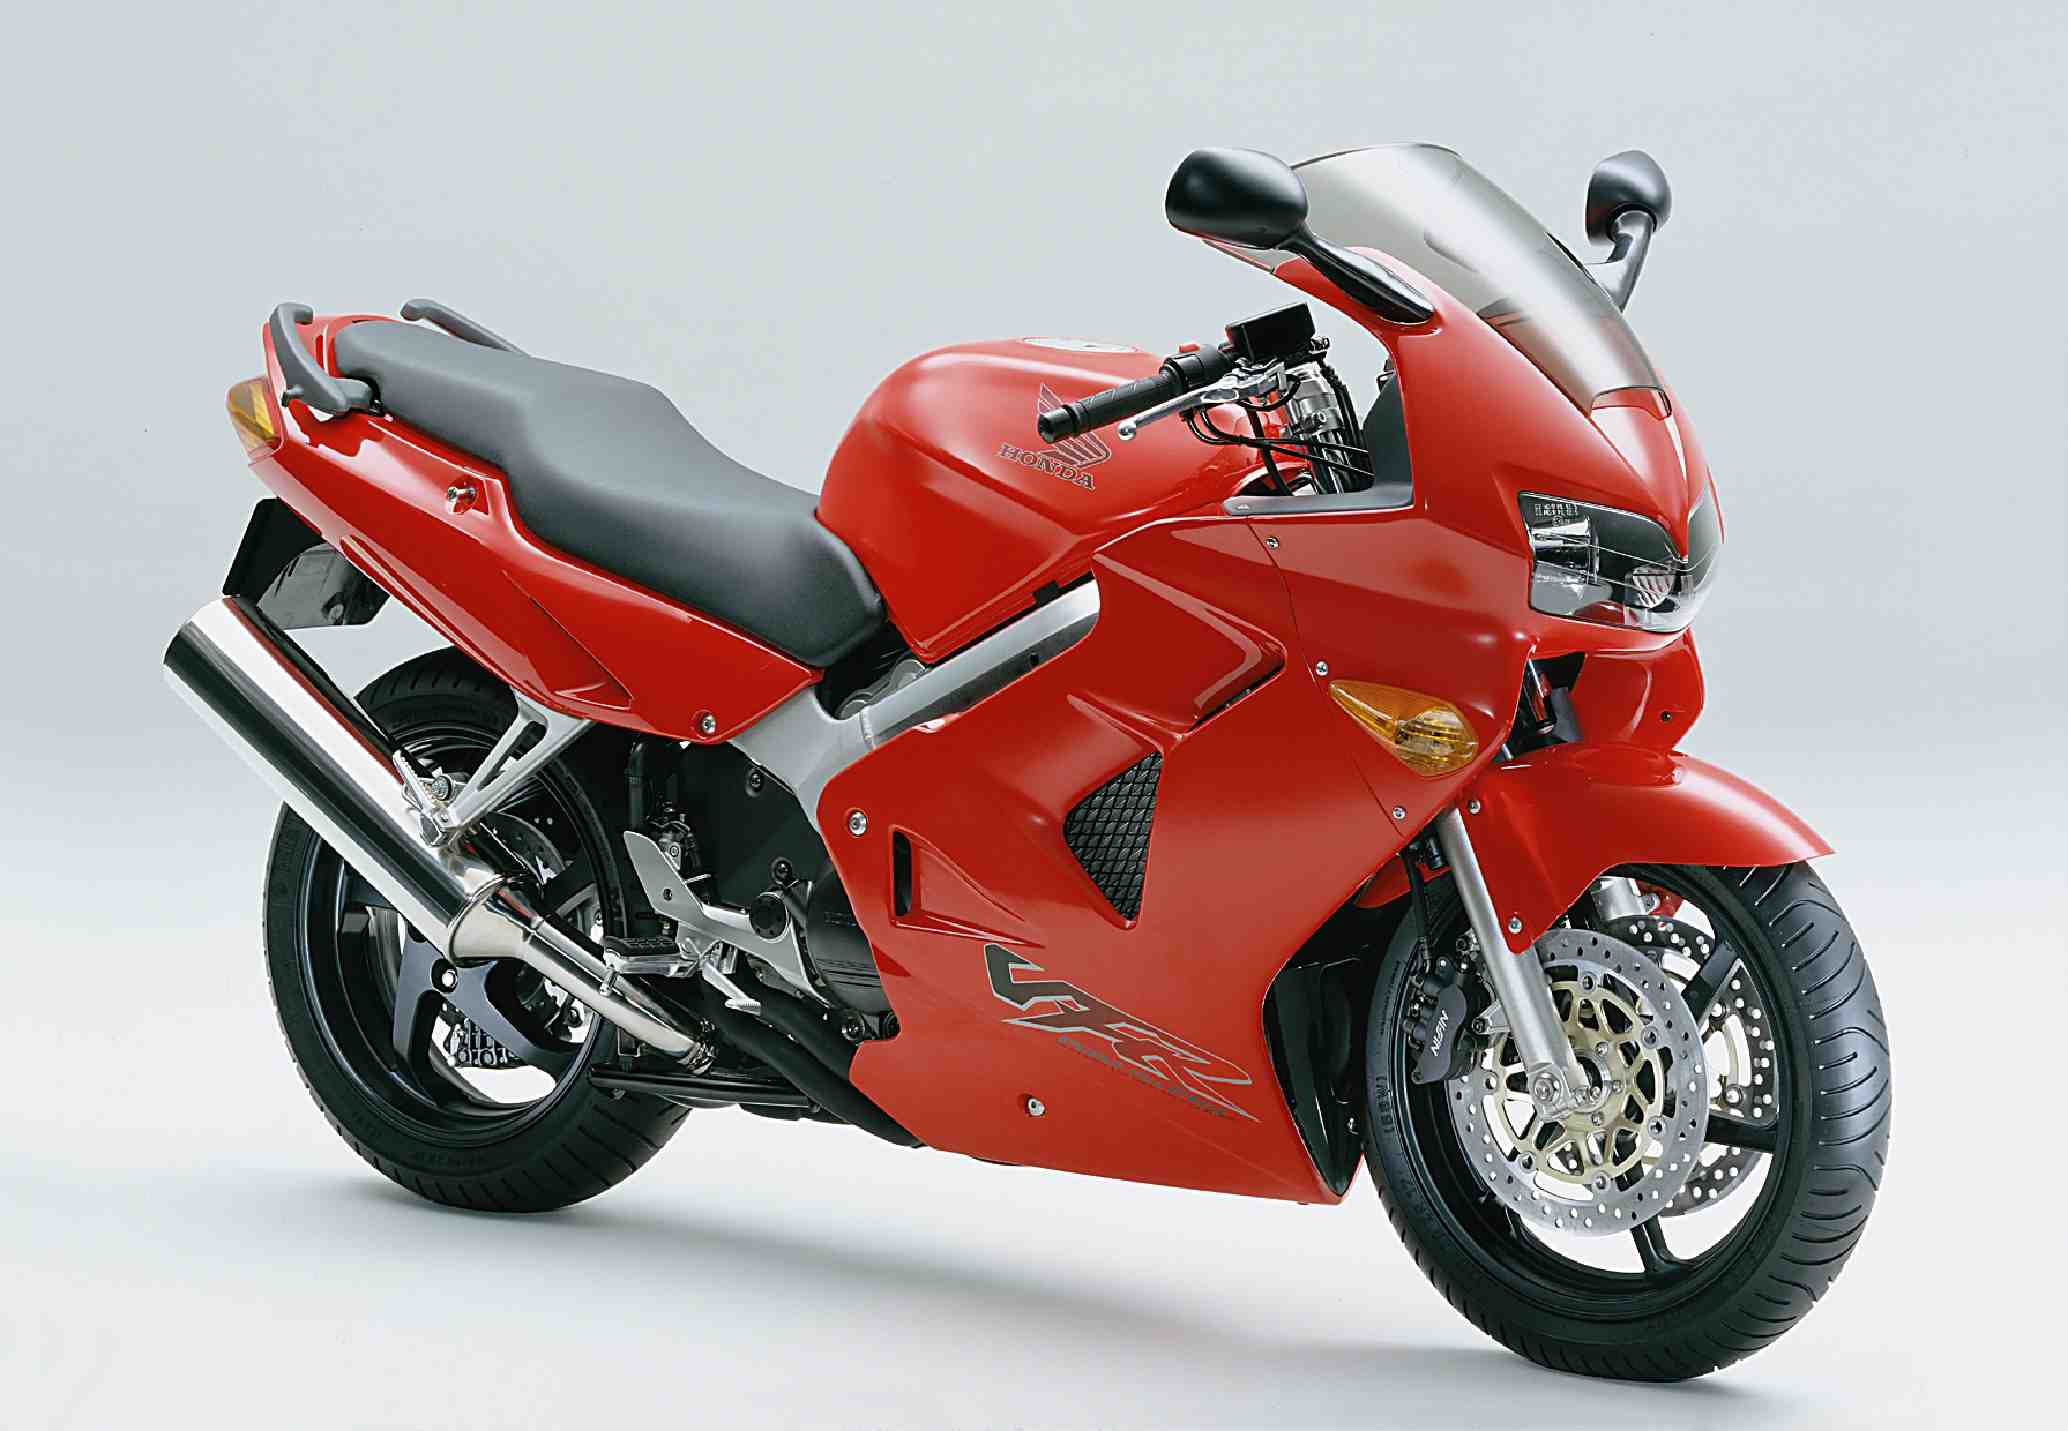 Honda VFR800, VFR800ABS, Interceptor 800 VTEC Motorcycle ...